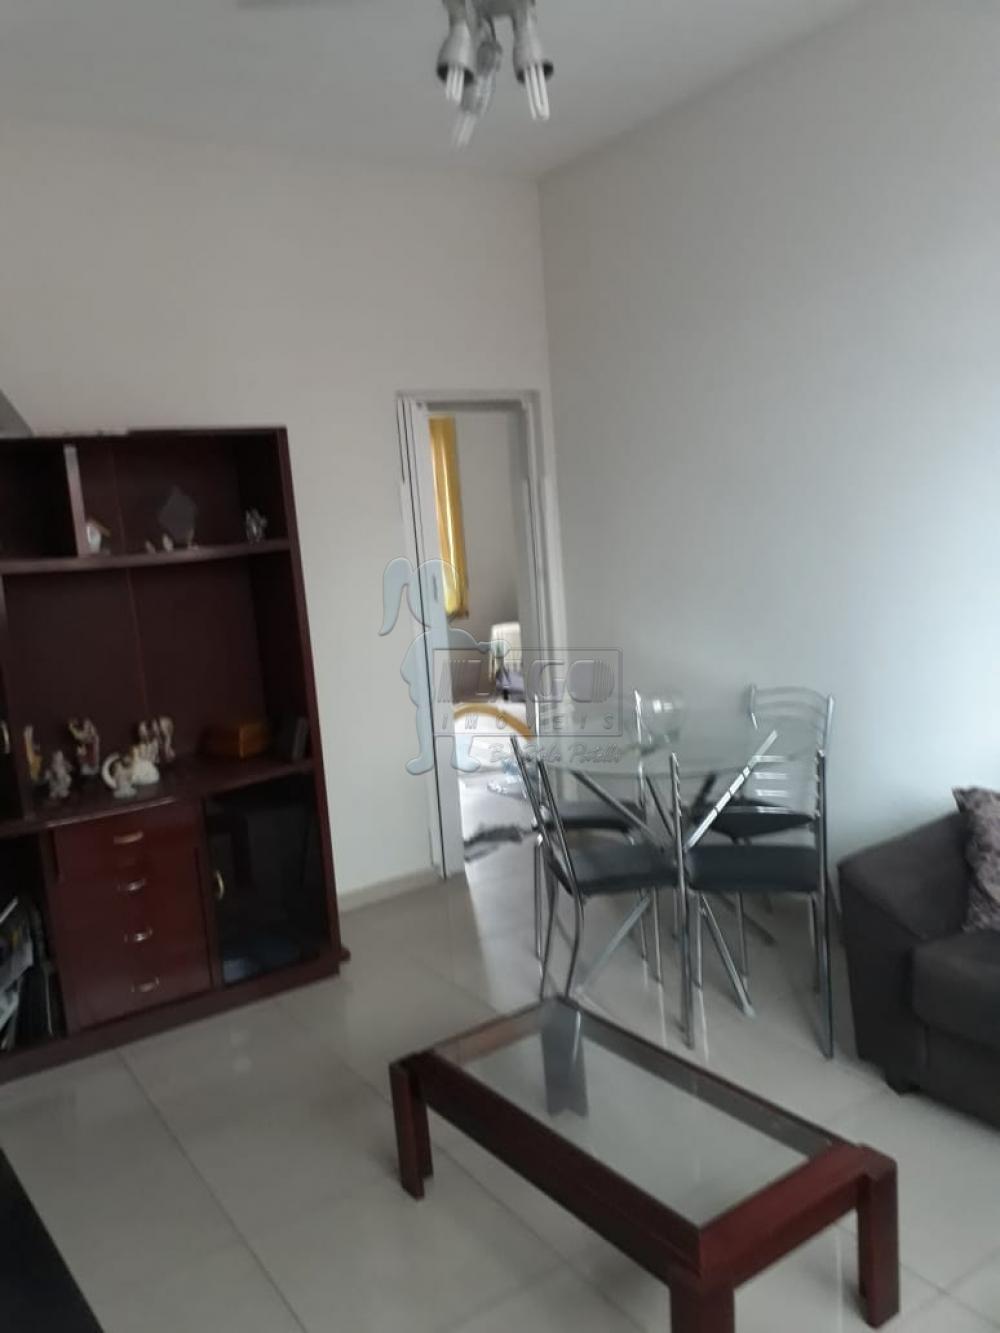 Comprar Apartamentos / Padrão em Santos R$ 380.000,00 - Foto 10